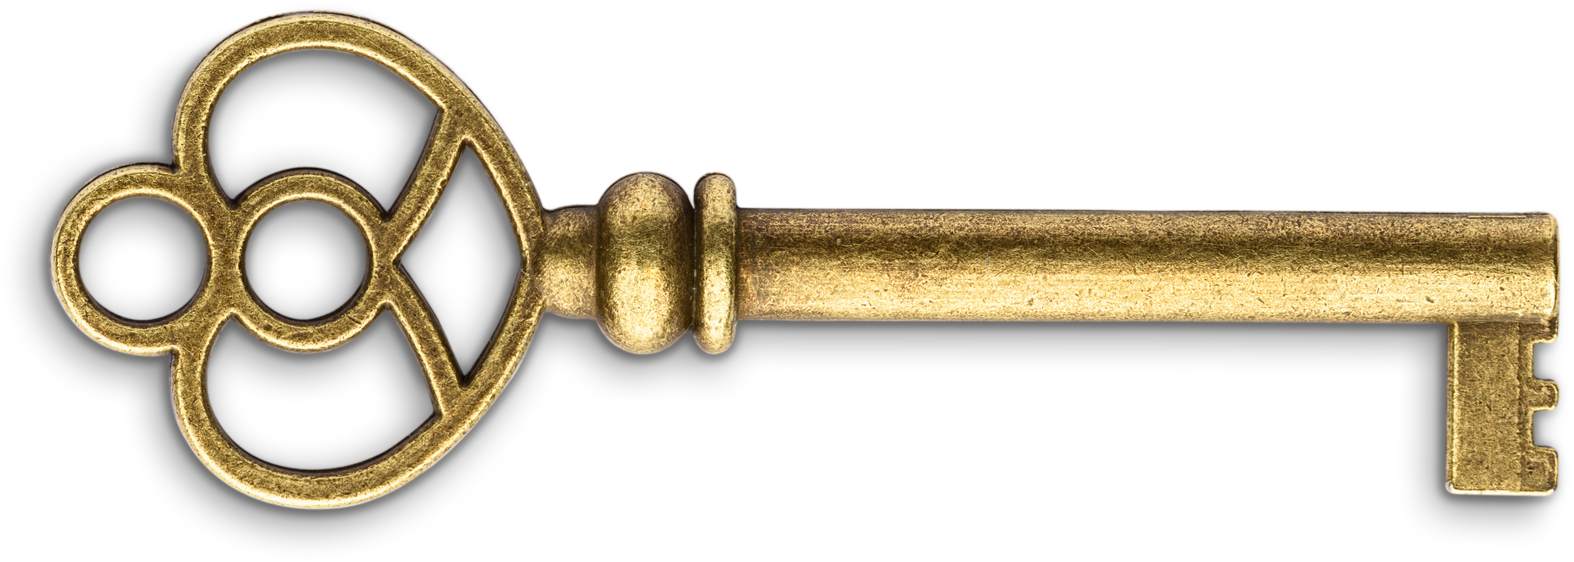 Vintage Golden Key Cutout